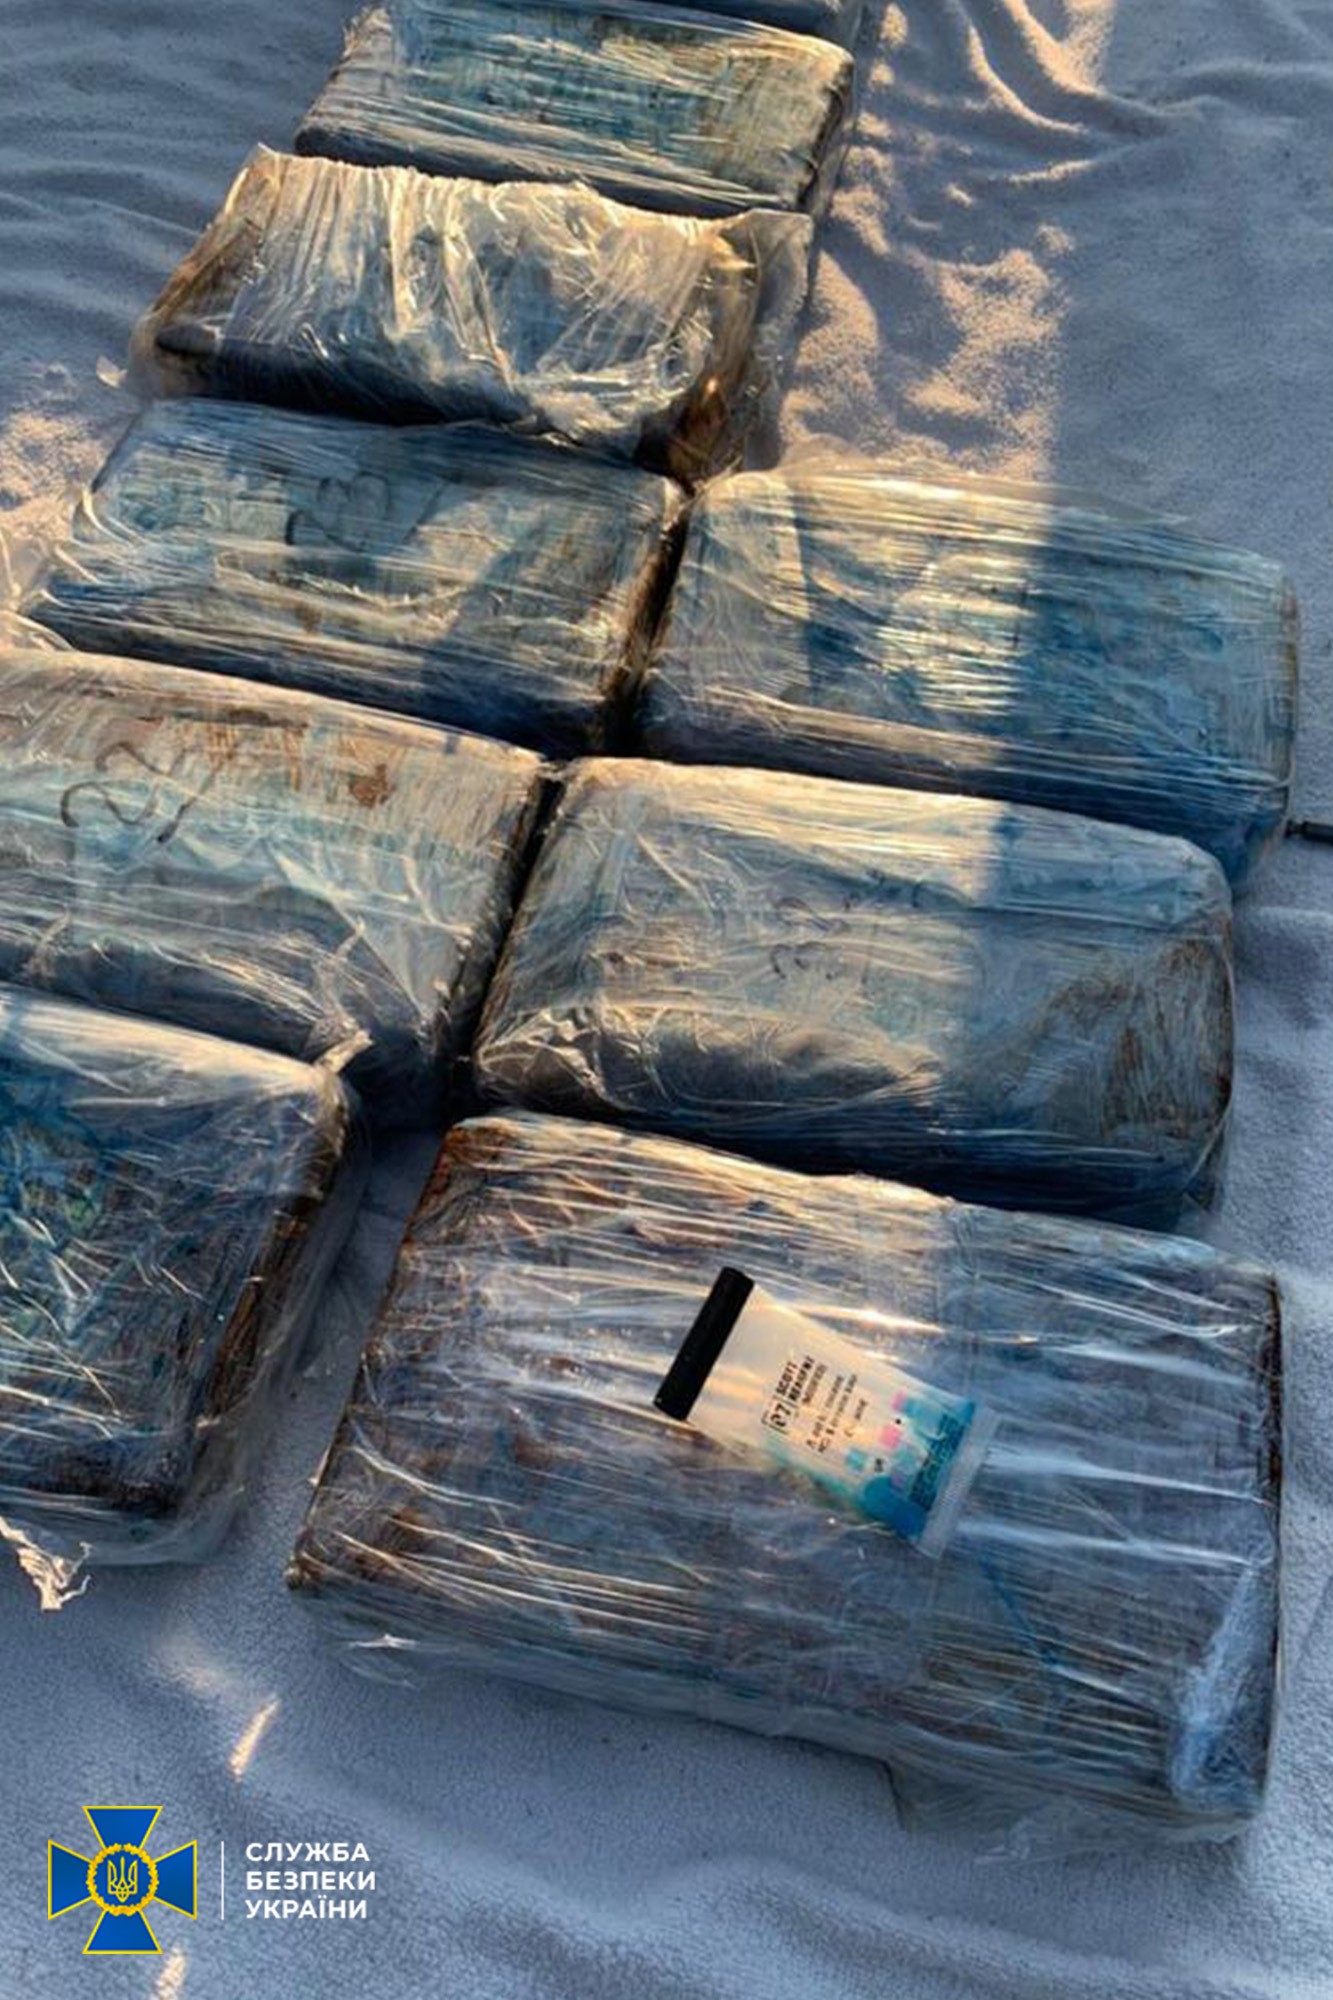 В Одессе задержали членов всемирной преступной организации «Ндрангета» - из Латинской Америки в Евросоюз переправляли кокаин через Украину